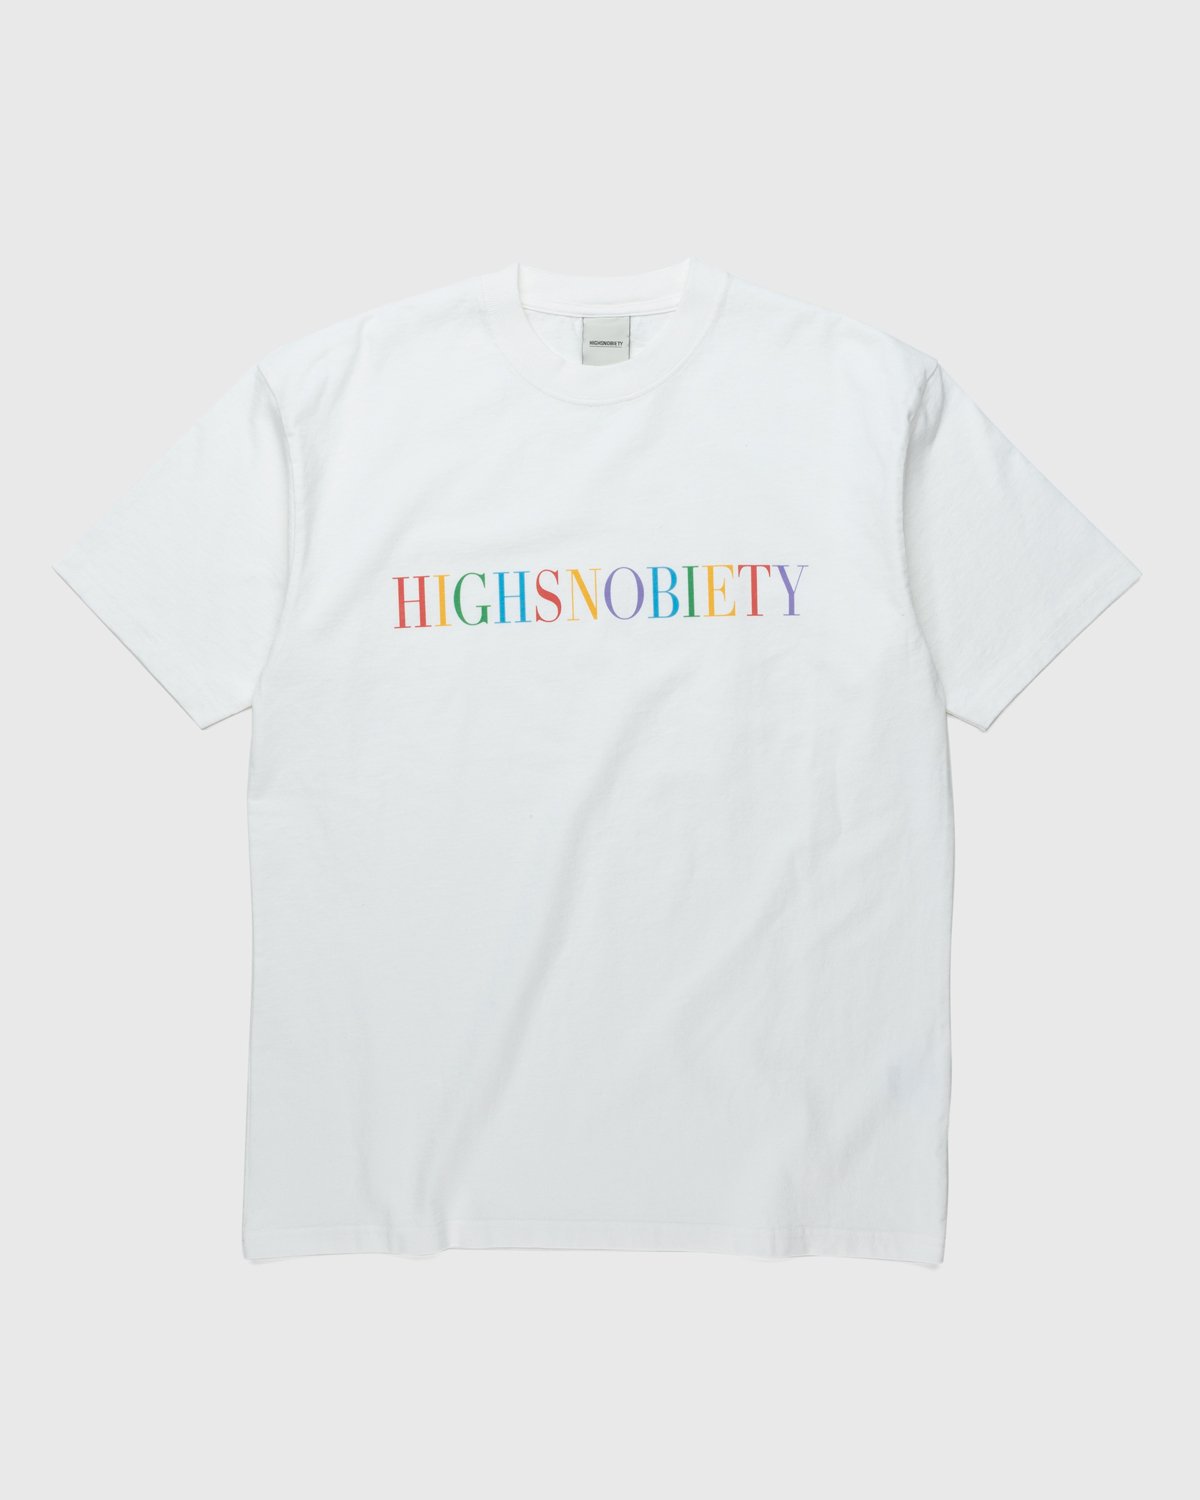 Highsnobiety - Rainbow T-Shirt White - Clothing - White - Image 1